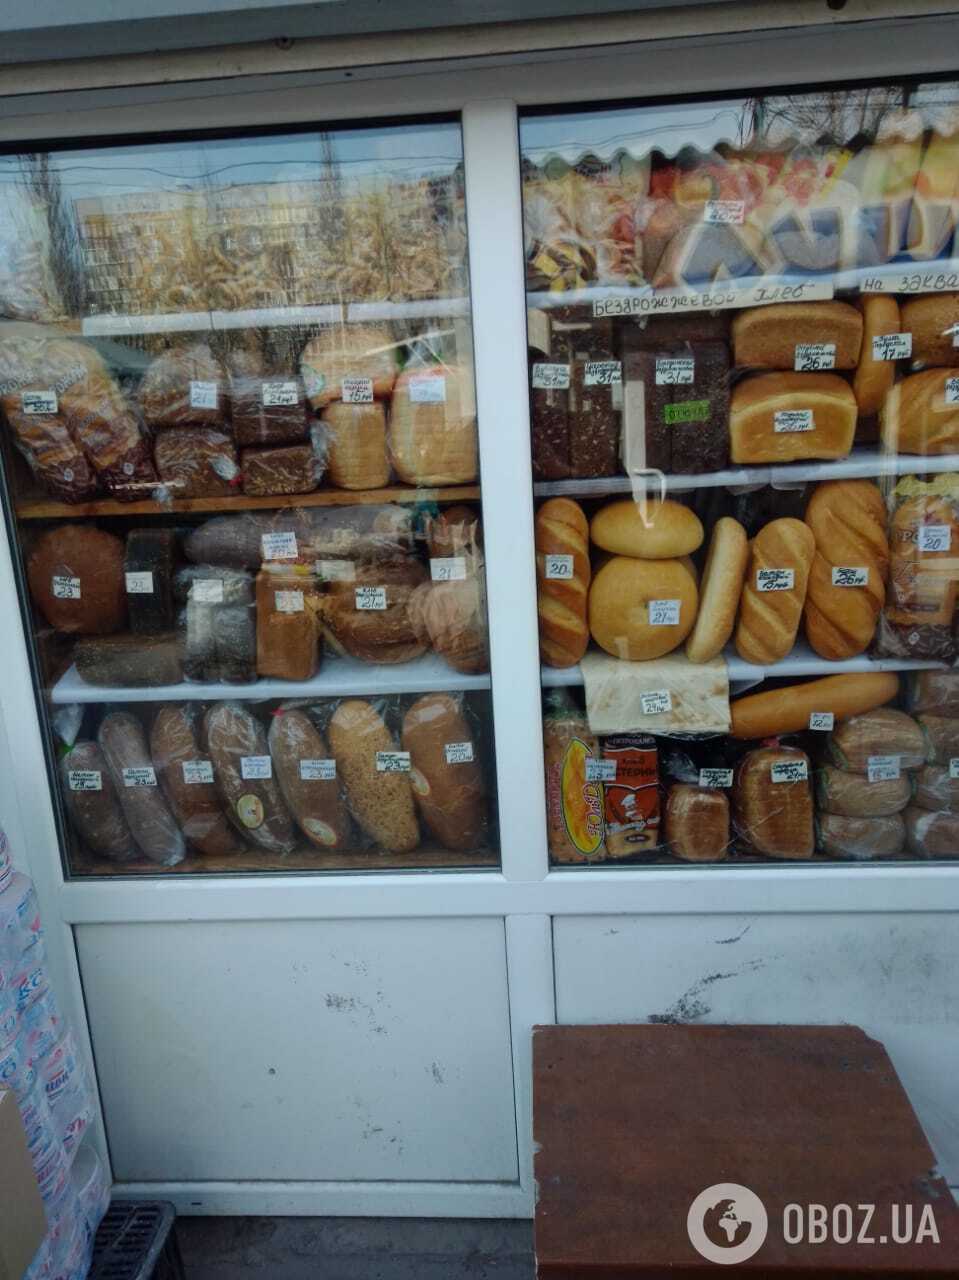 Сравните: цены на продукты в оккупированном Донецке. Фоторепортаж